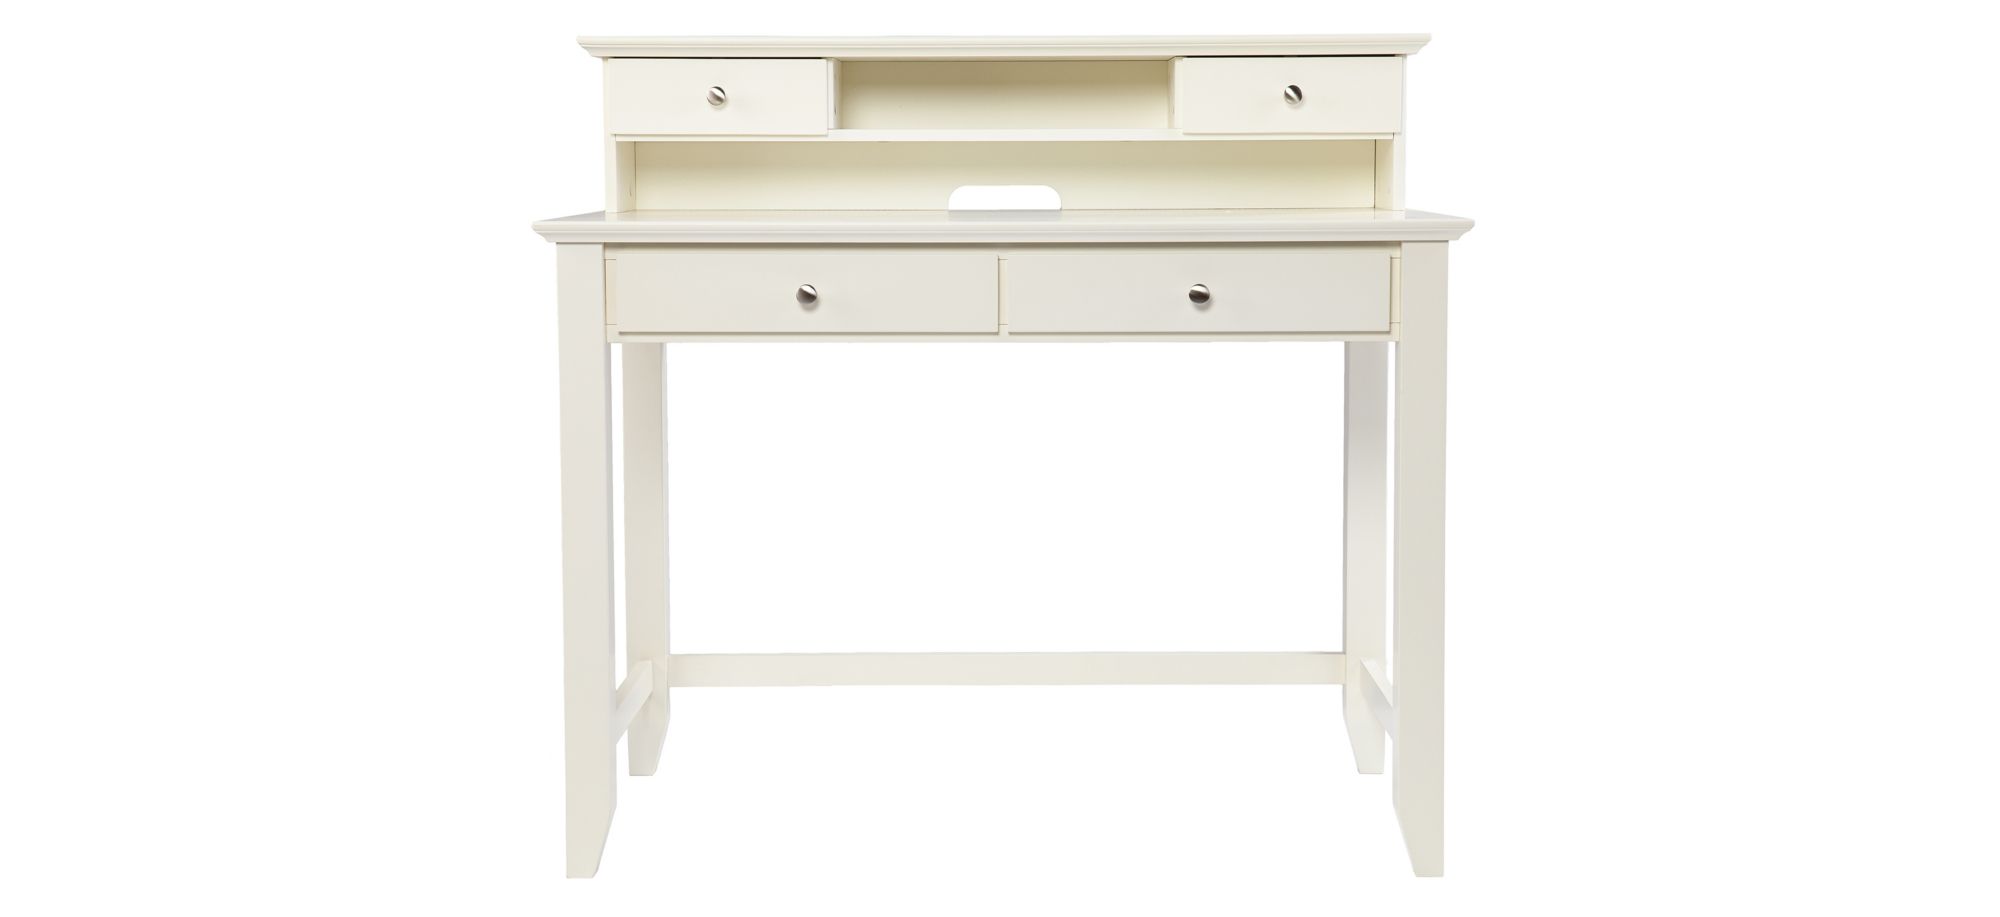 Blyth Desk in White by SEI Furniture